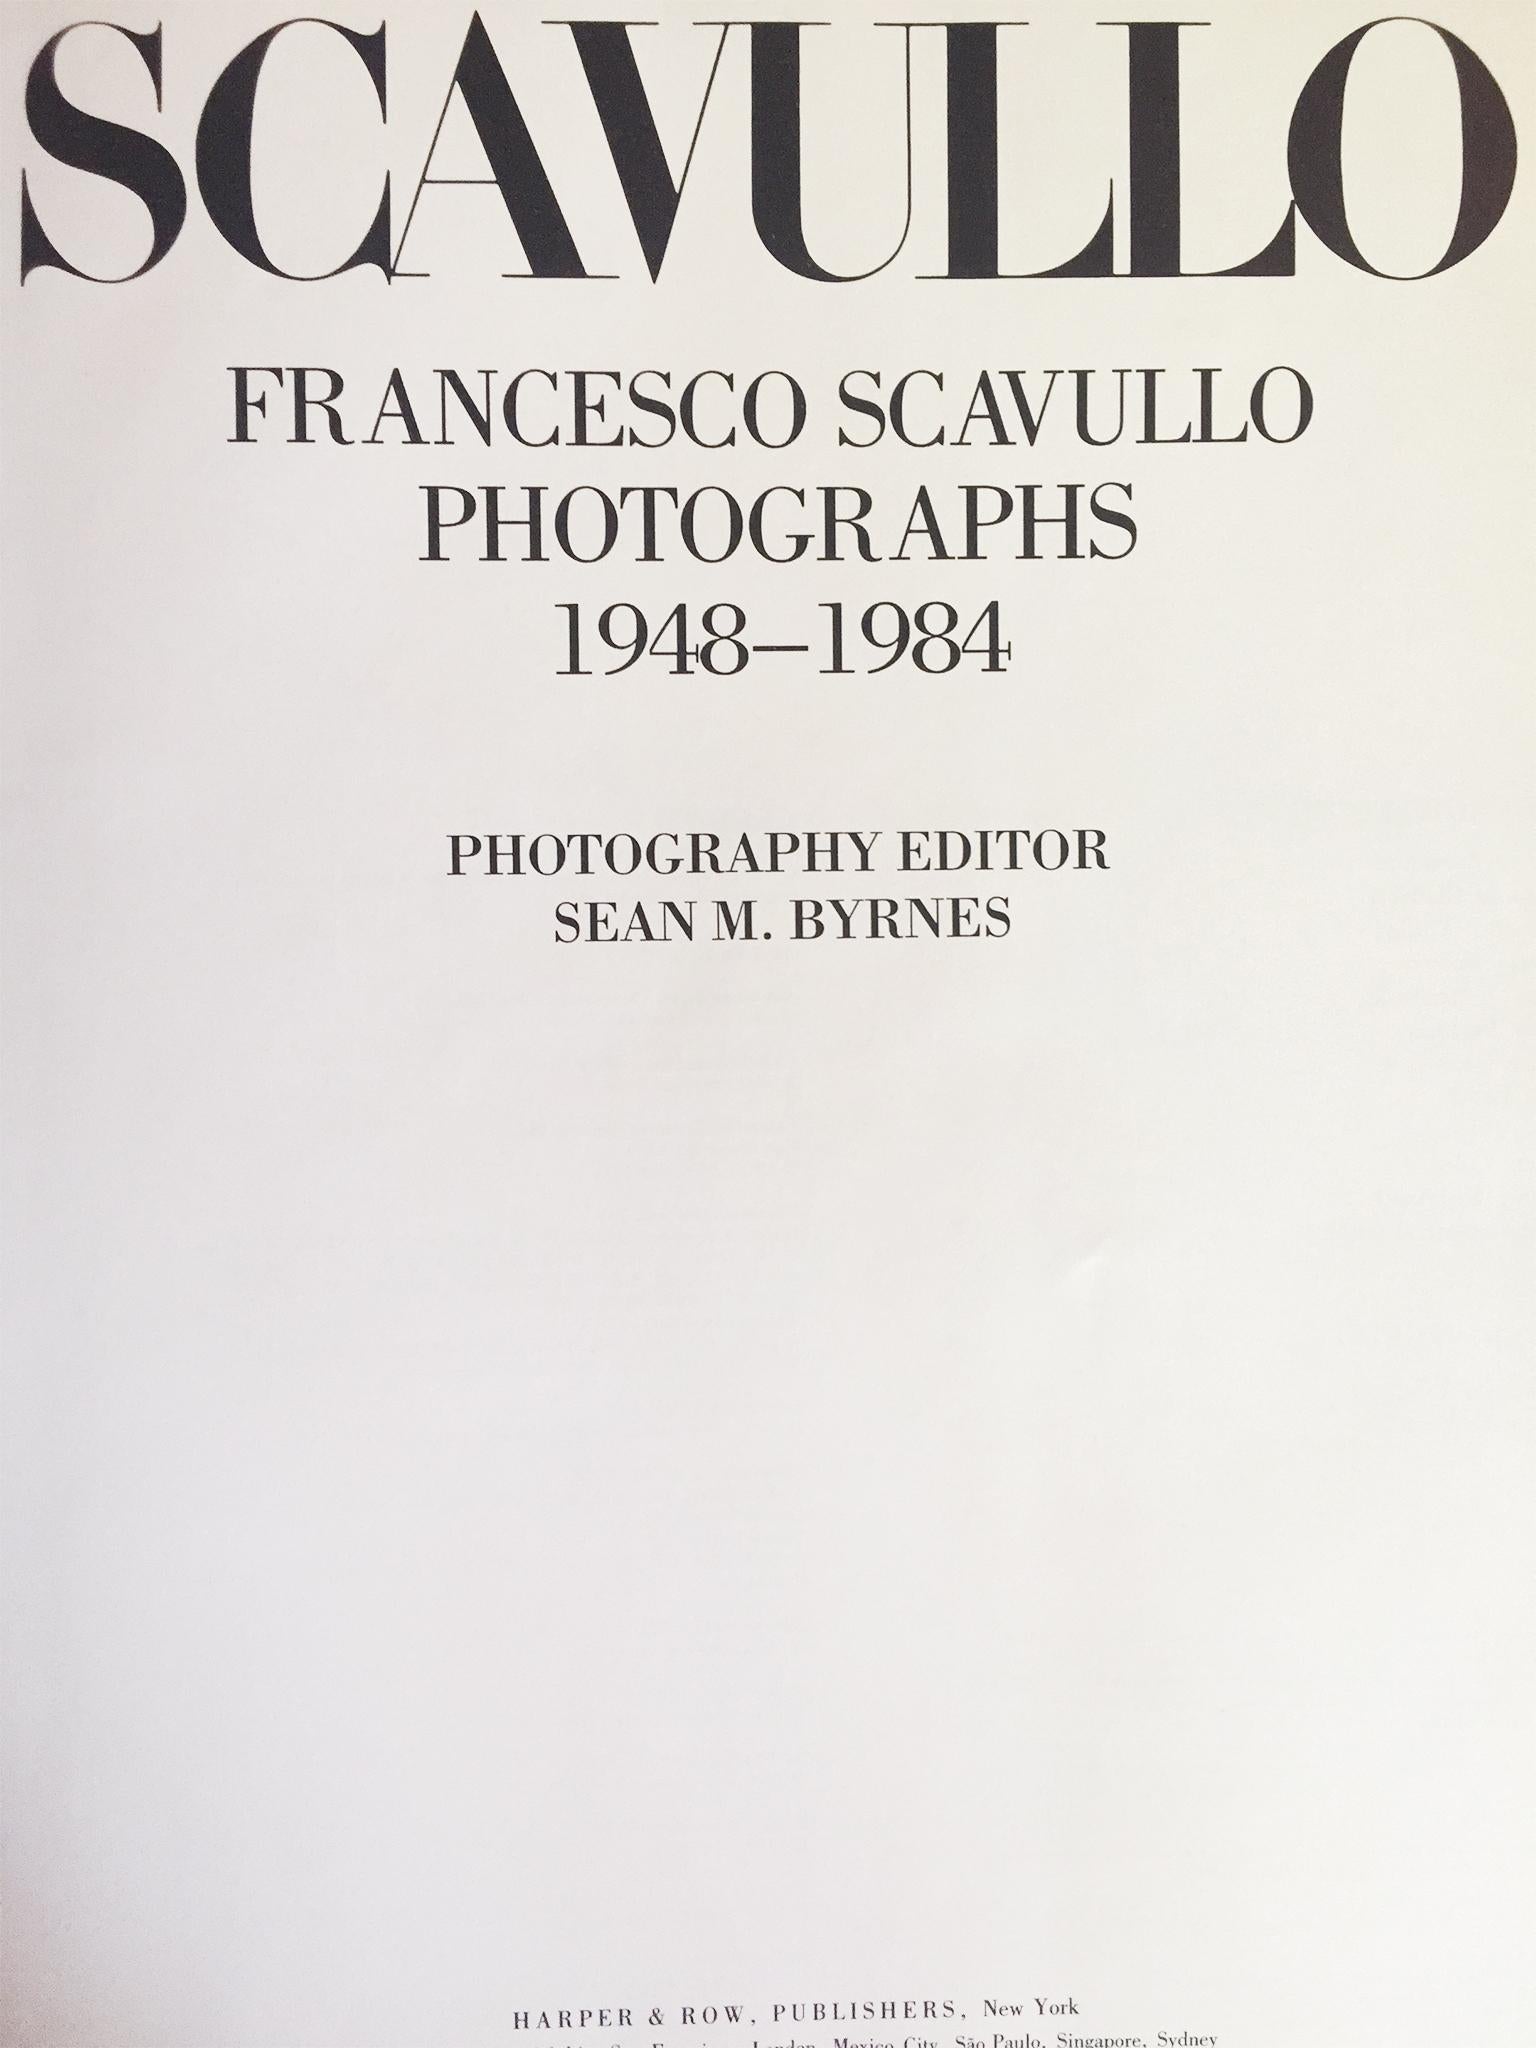 Eine wunderbare Sammlung von Francesco Scavullos Schwarz-Weiß-Fotografien aus den Jahren 1948 bis 1984. Dazu gehören seine Modestrecken und intimen Porträts von Künstlern, Schauspielern und anderen Persönlichkeiten.

Hardcover mit glänzendem